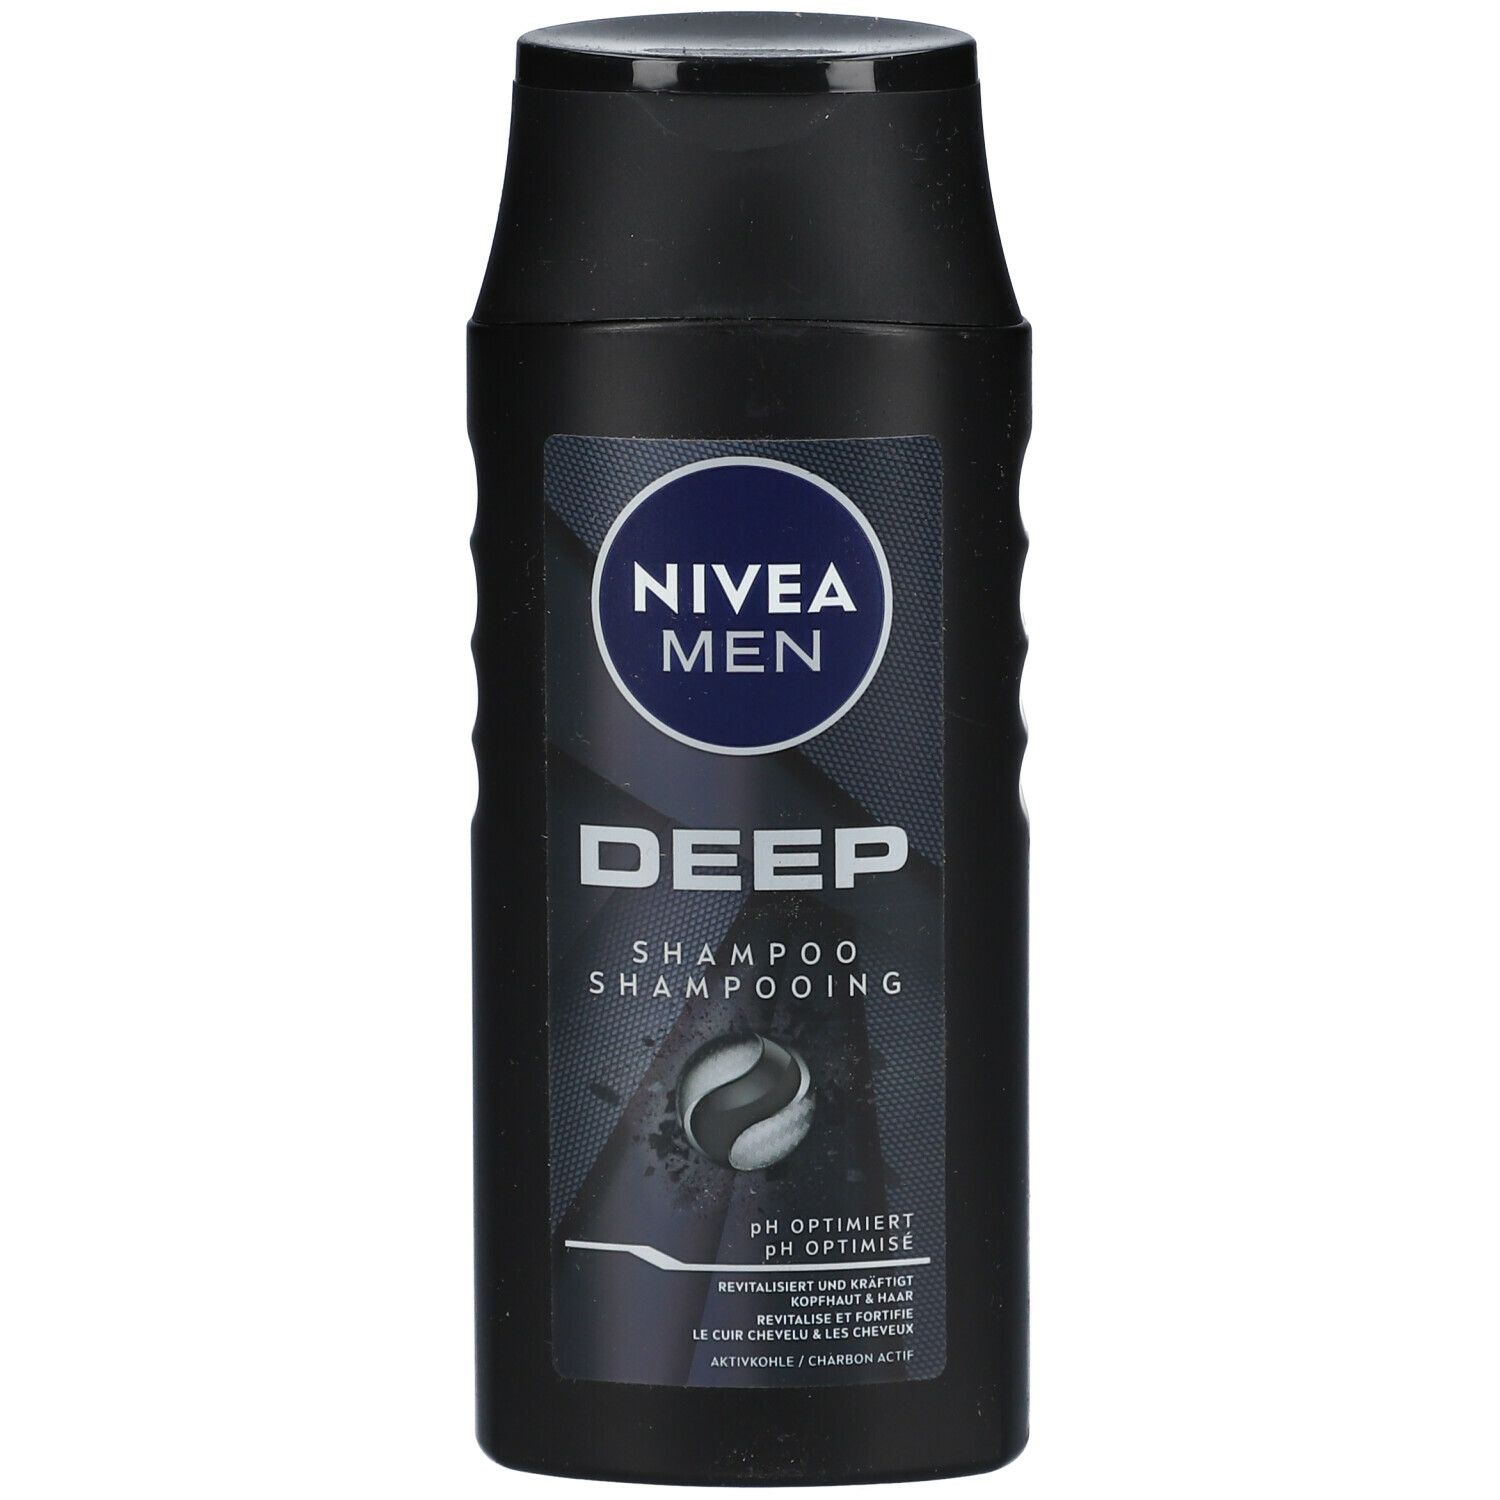 NIVEA® Hair Care DEEP Revitalisierend Pflegeshampoo